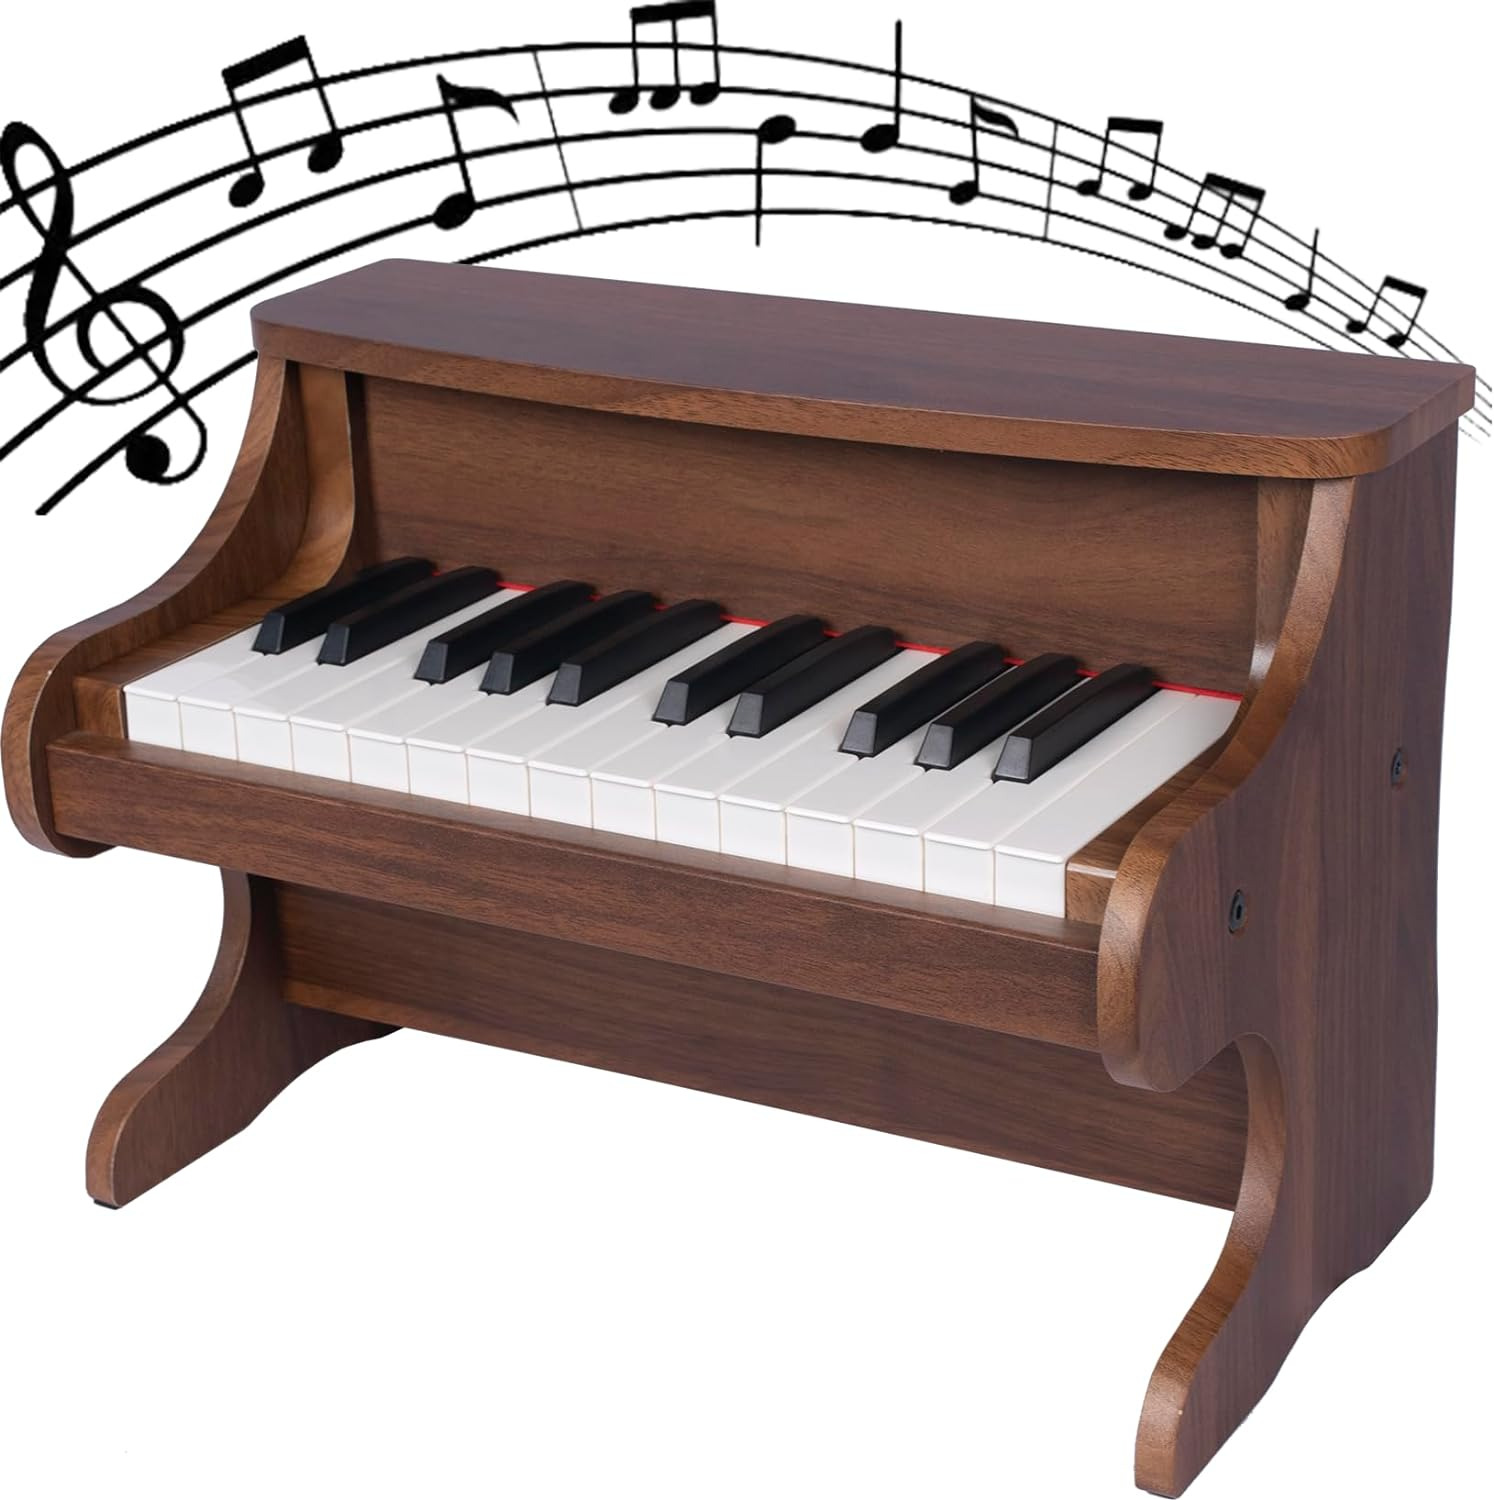 25 Keys Kids Piano Keyboard Mini Digital Piano Keyboard for Kids Wooden Electria